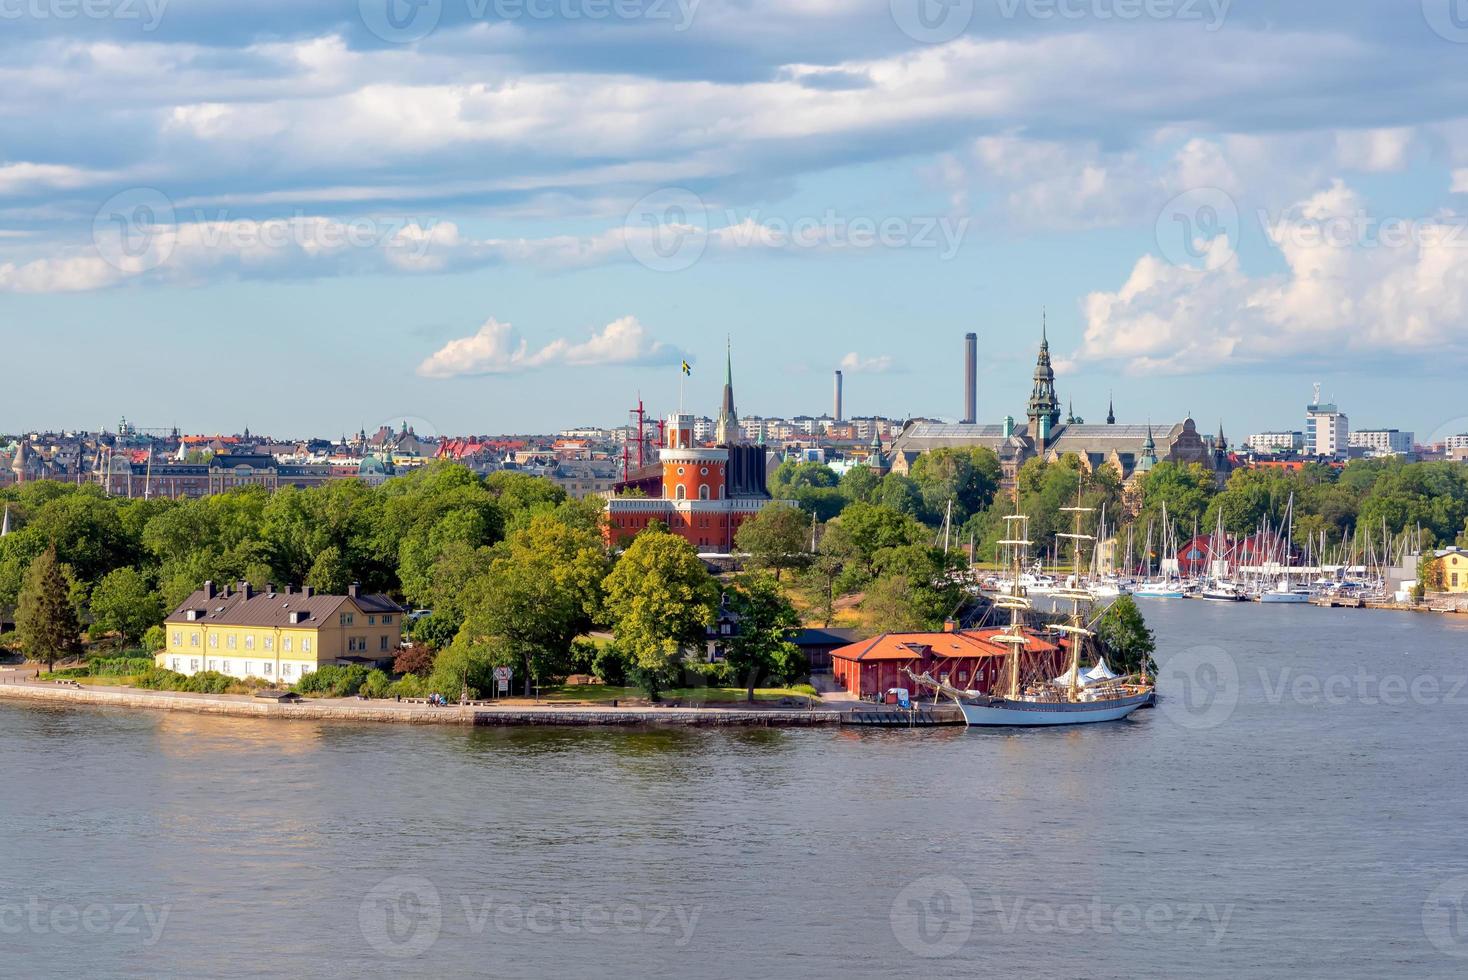 Vista della città di Stoccolma sul porto marittimo nella stagione estiva a Stoccolma, Svezia foto